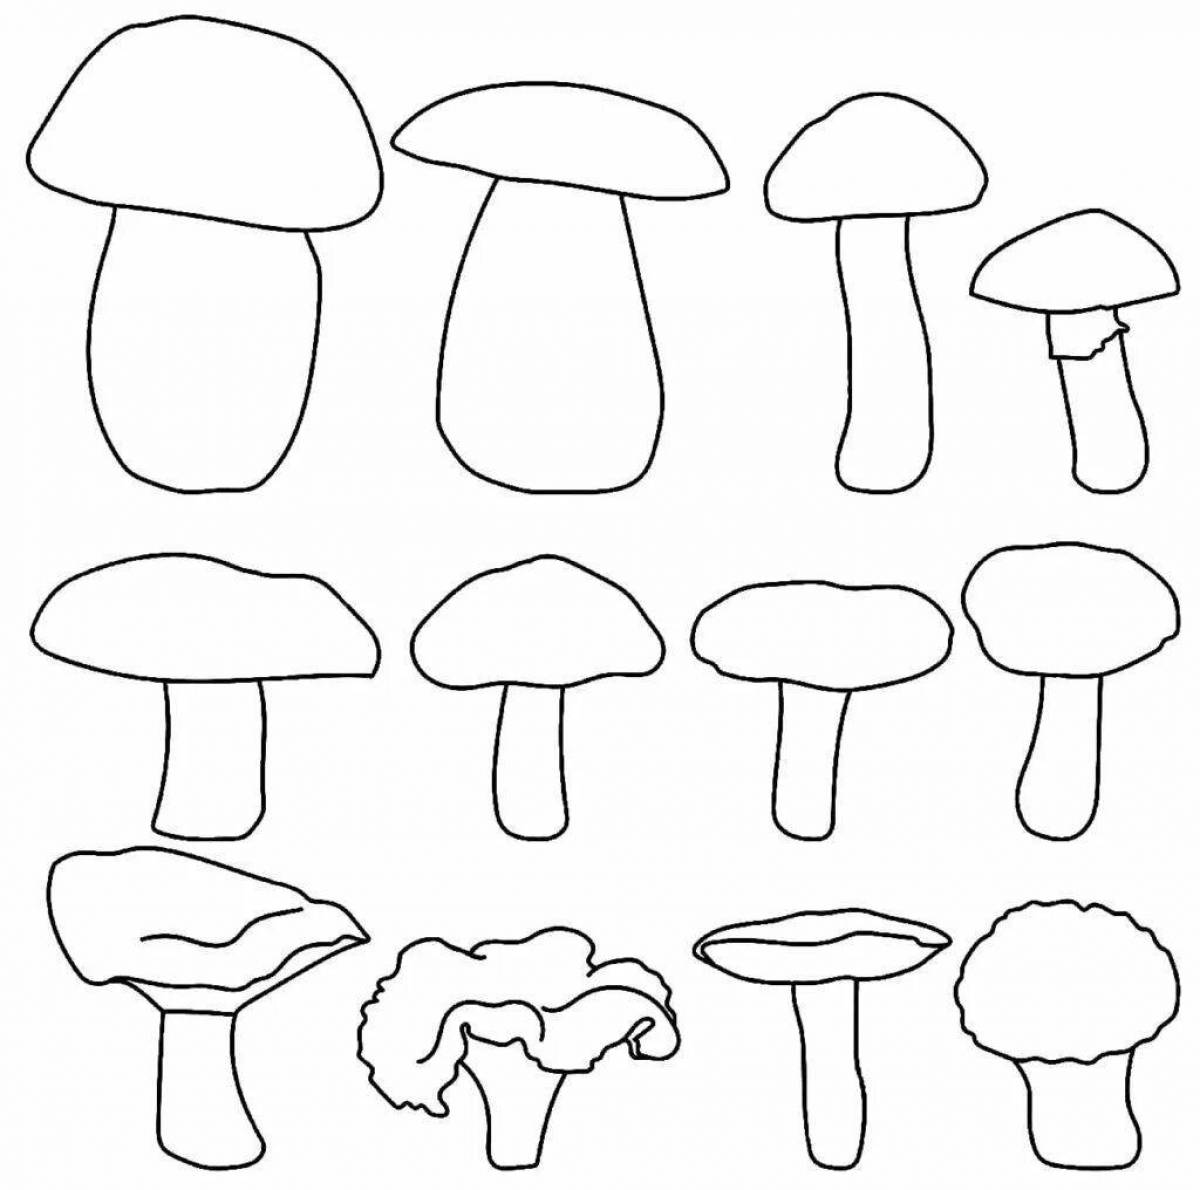 Веселая раскраска грибов для детей 3-4 лет